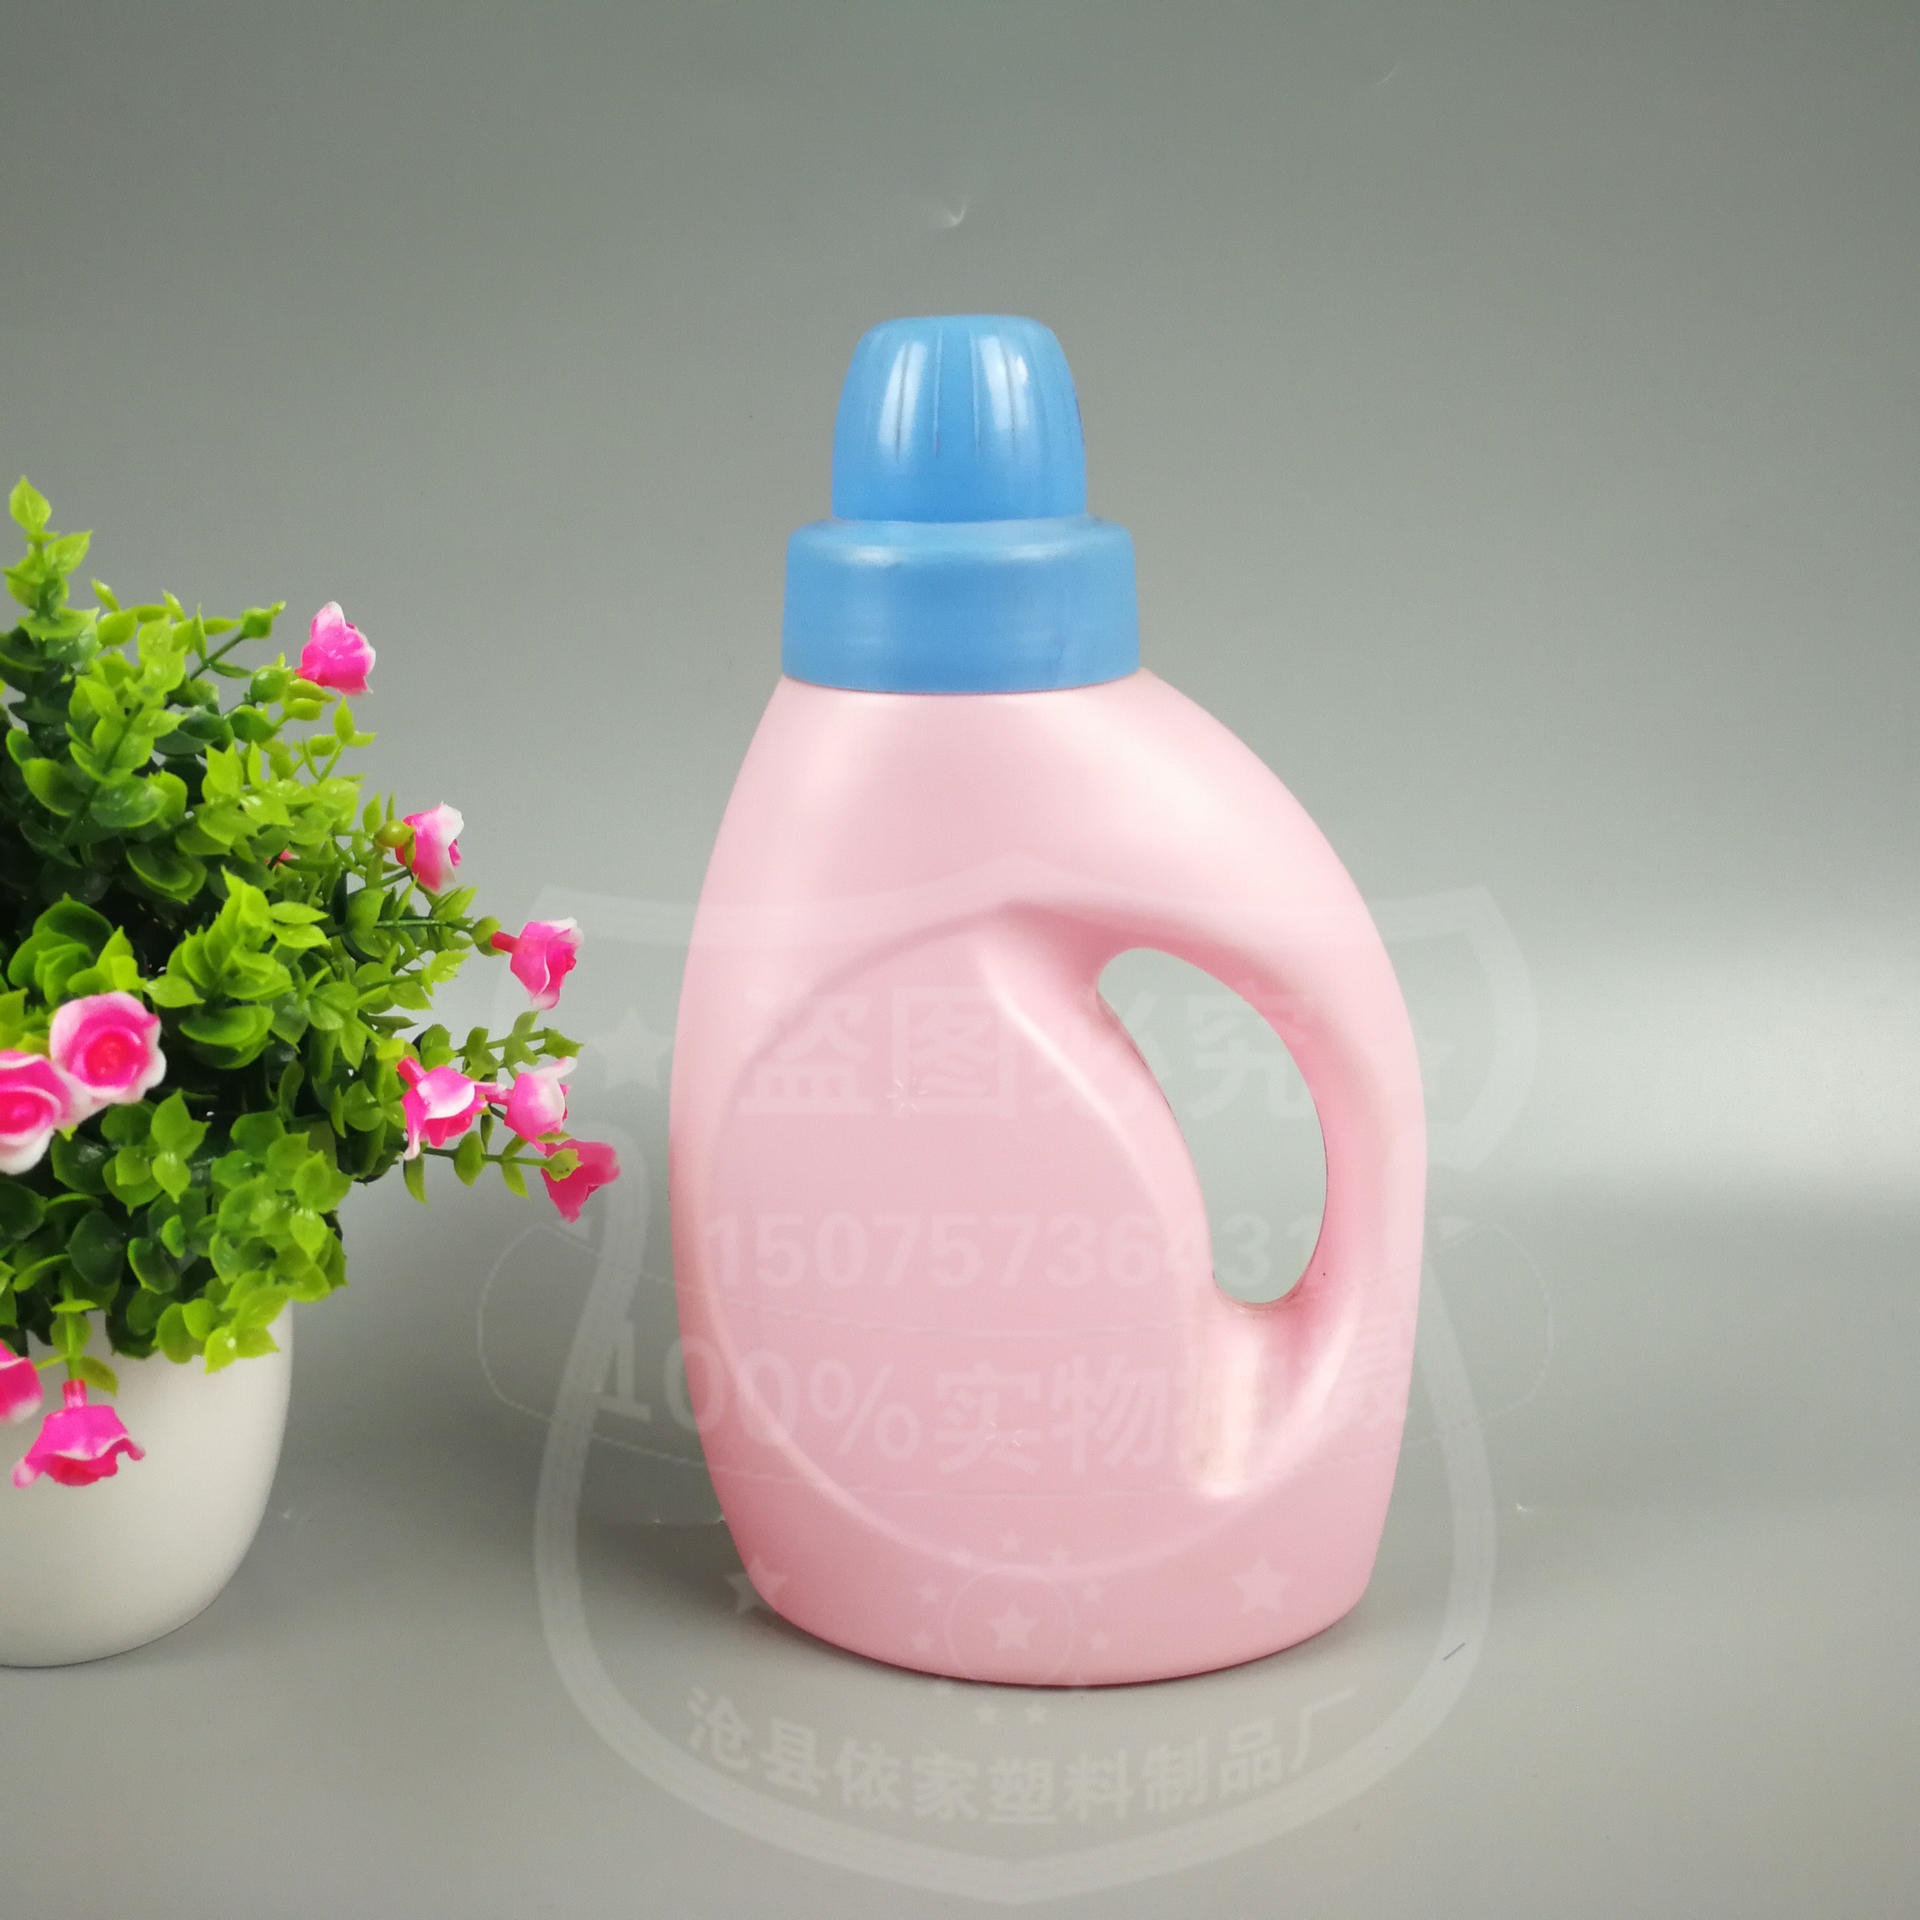 依家 新款粉色洗衣液桶  外包装颜色齐全 欢迎订购图片